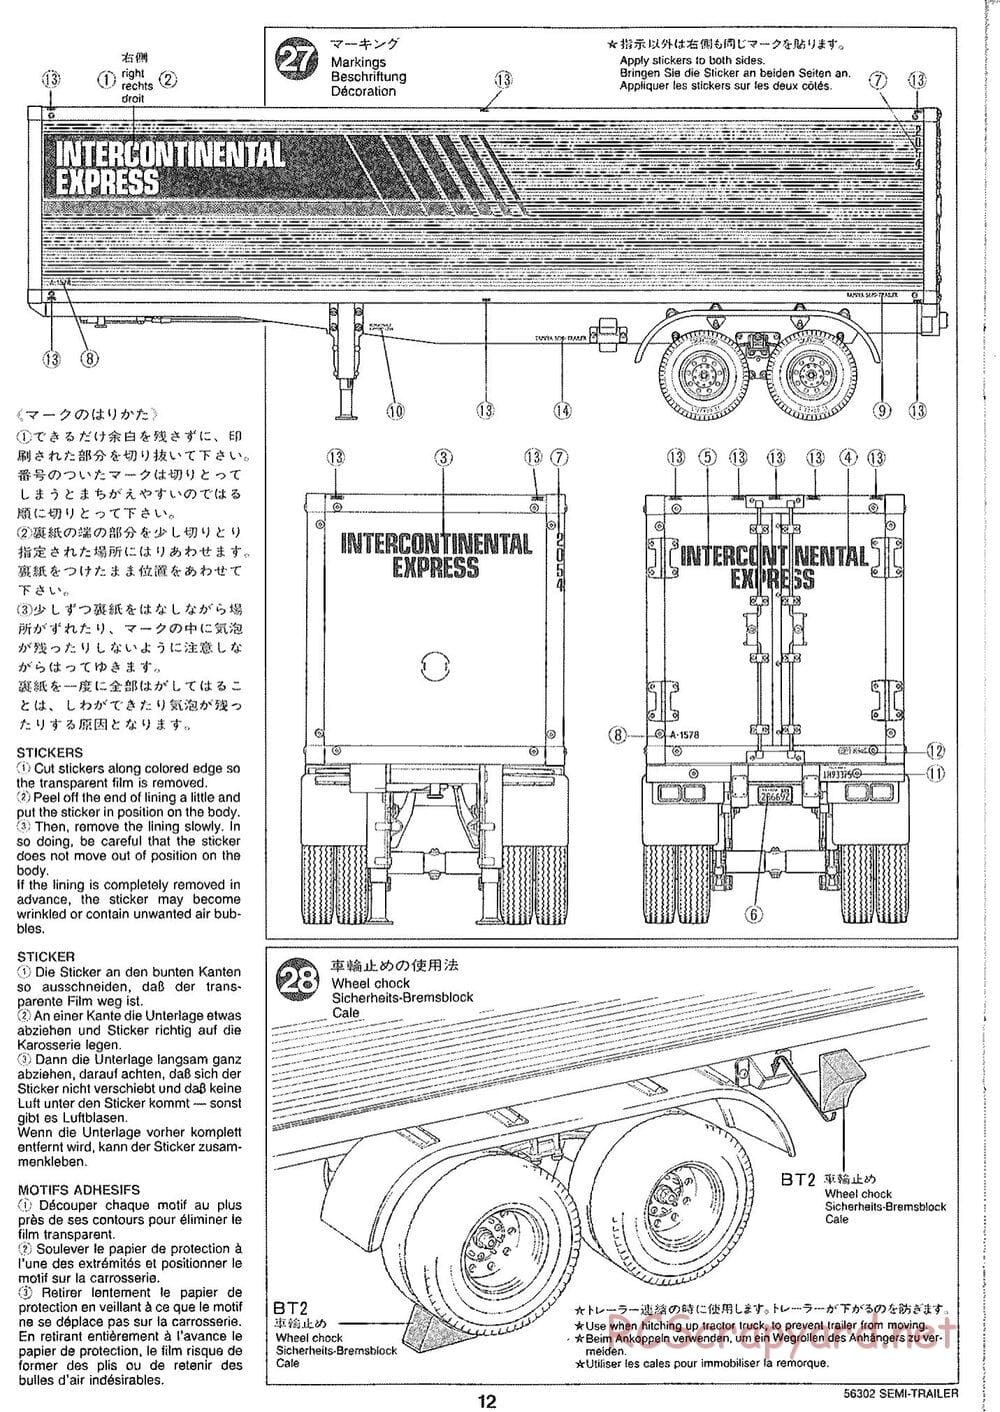 Tamiya - Semi Box Trailer Chassis - Manual - Page 12